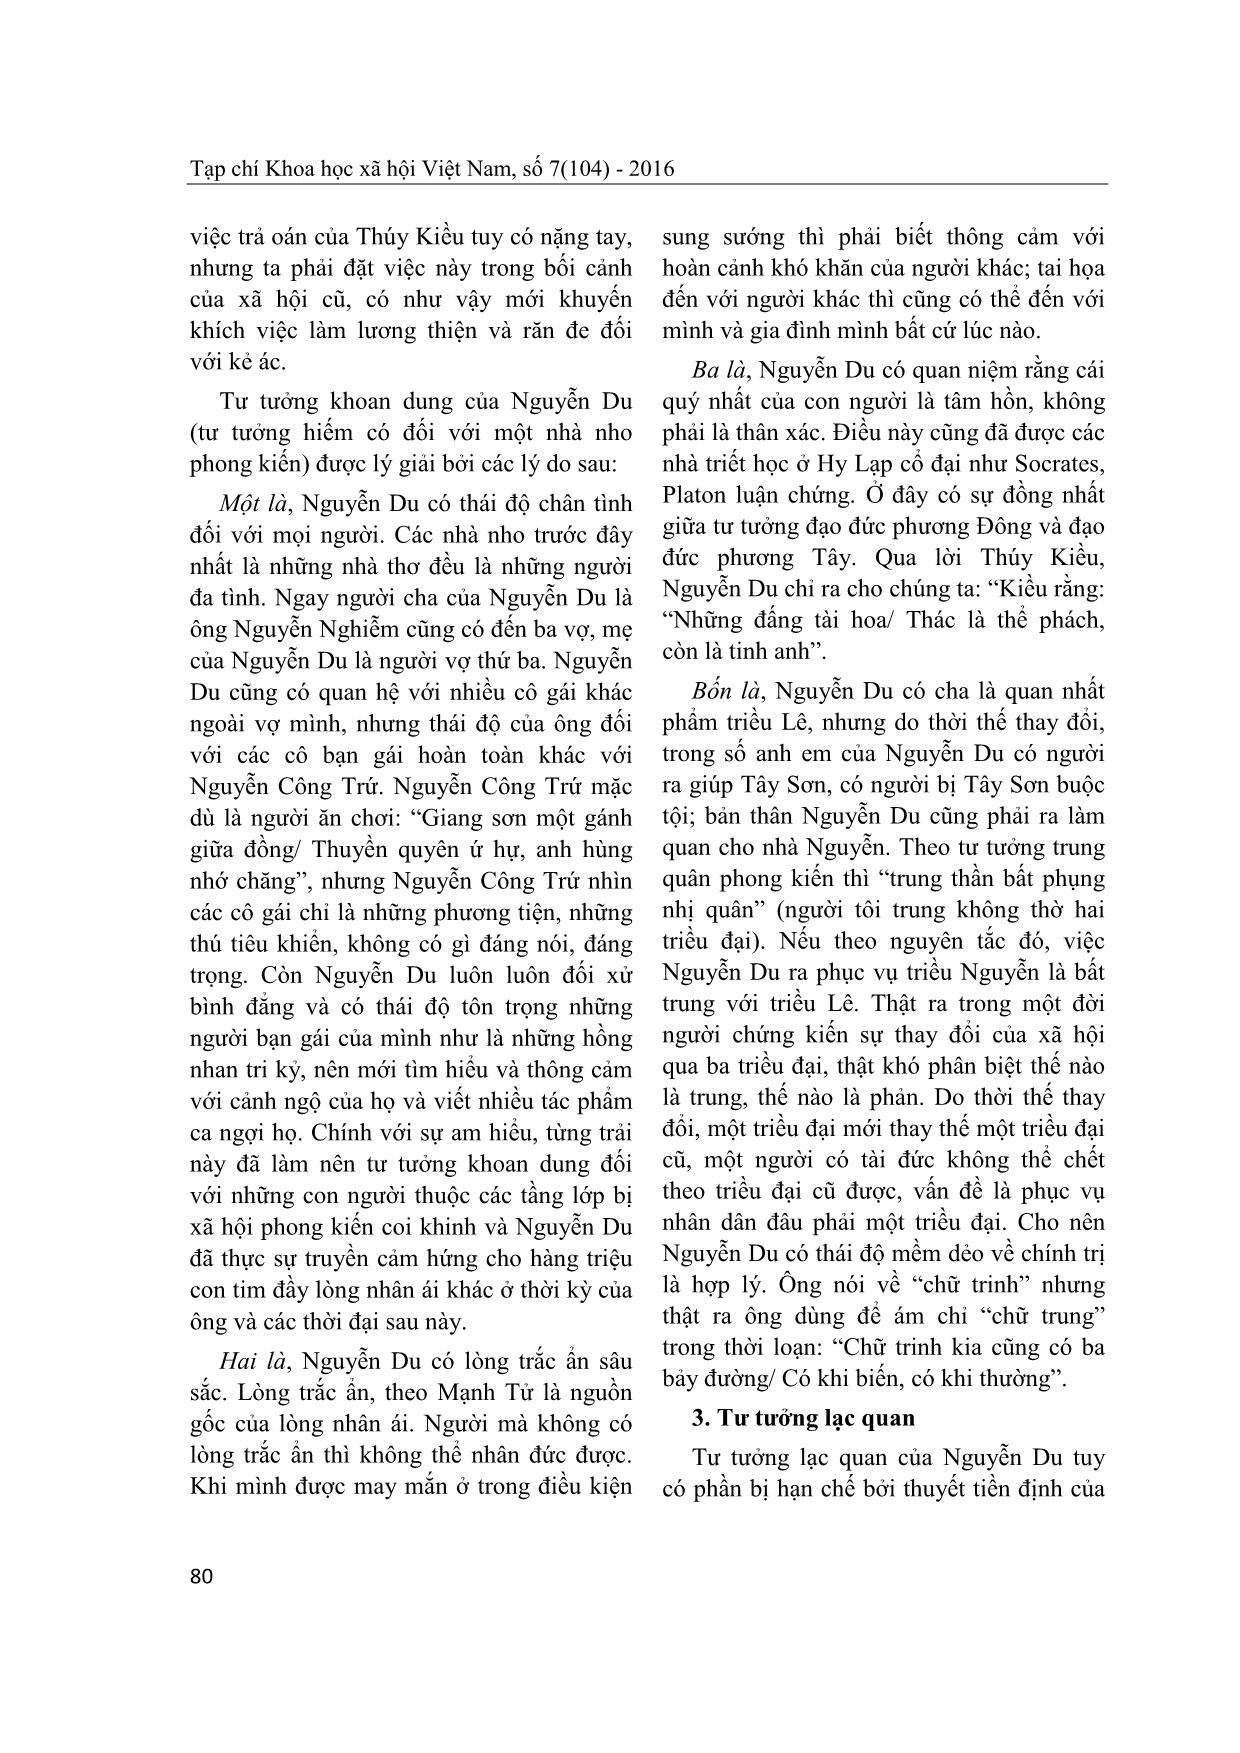 Tư tưởng khoan dung và lạc quan của Nguyễn Du trong Truyện Kiều trang 5